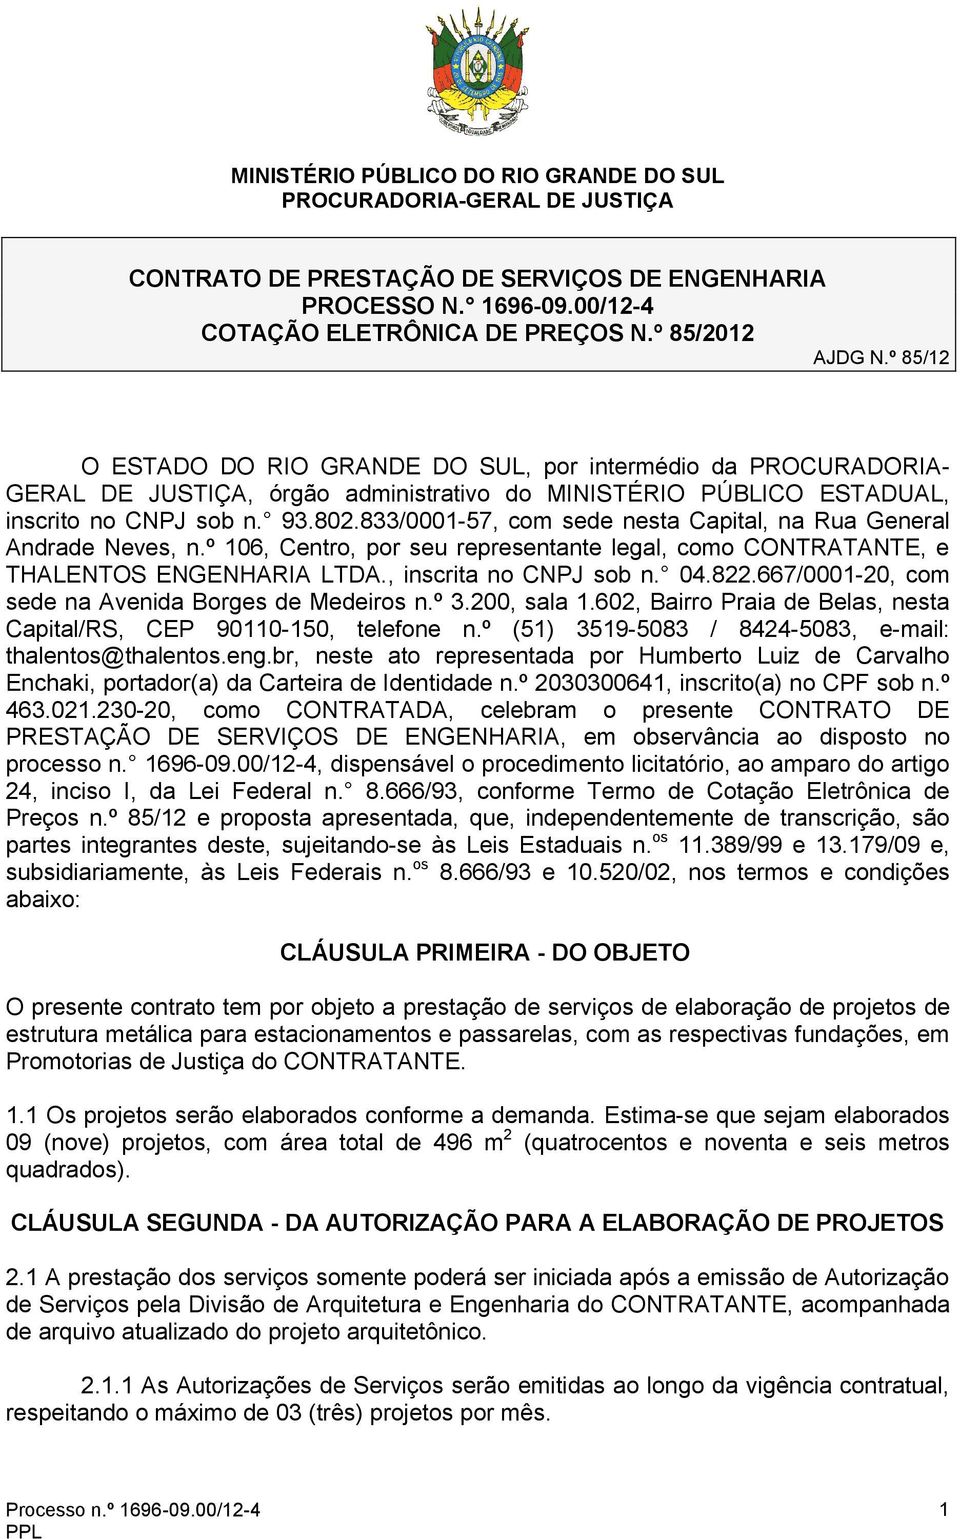 833/0001-57, com sede nesta Capital, na Rua General Andrade Neves, n.º 106, Centro, por seu representante legal, como CONTRATANTE, e THALENTOS ENGENHARIA LTDA., inscrita no CNPJ sob n. 04.822.